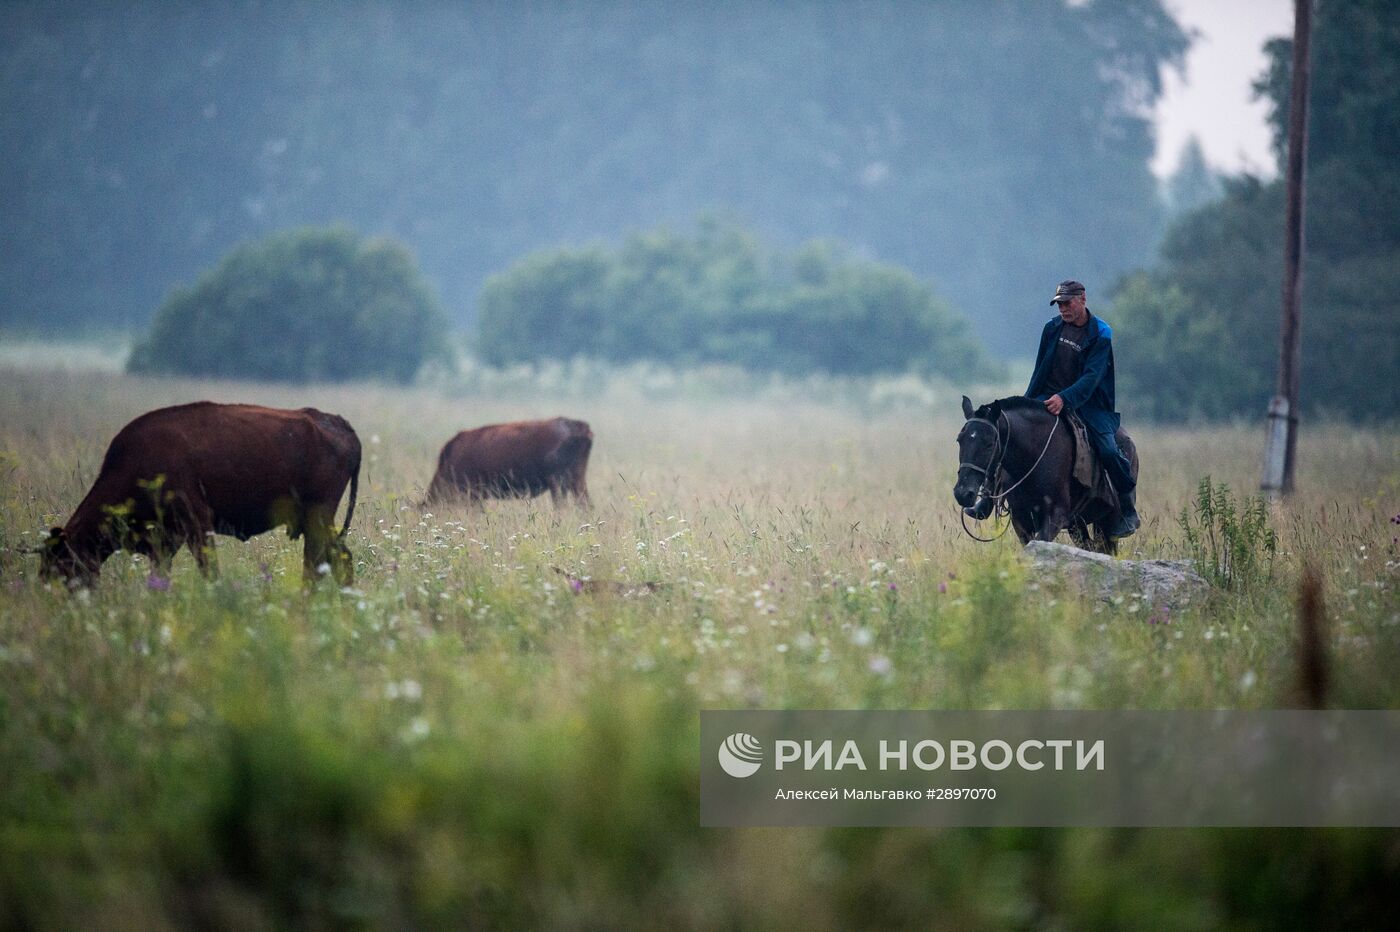 Работа сельскохозяйственной фермы в селе Ложниково Омской области